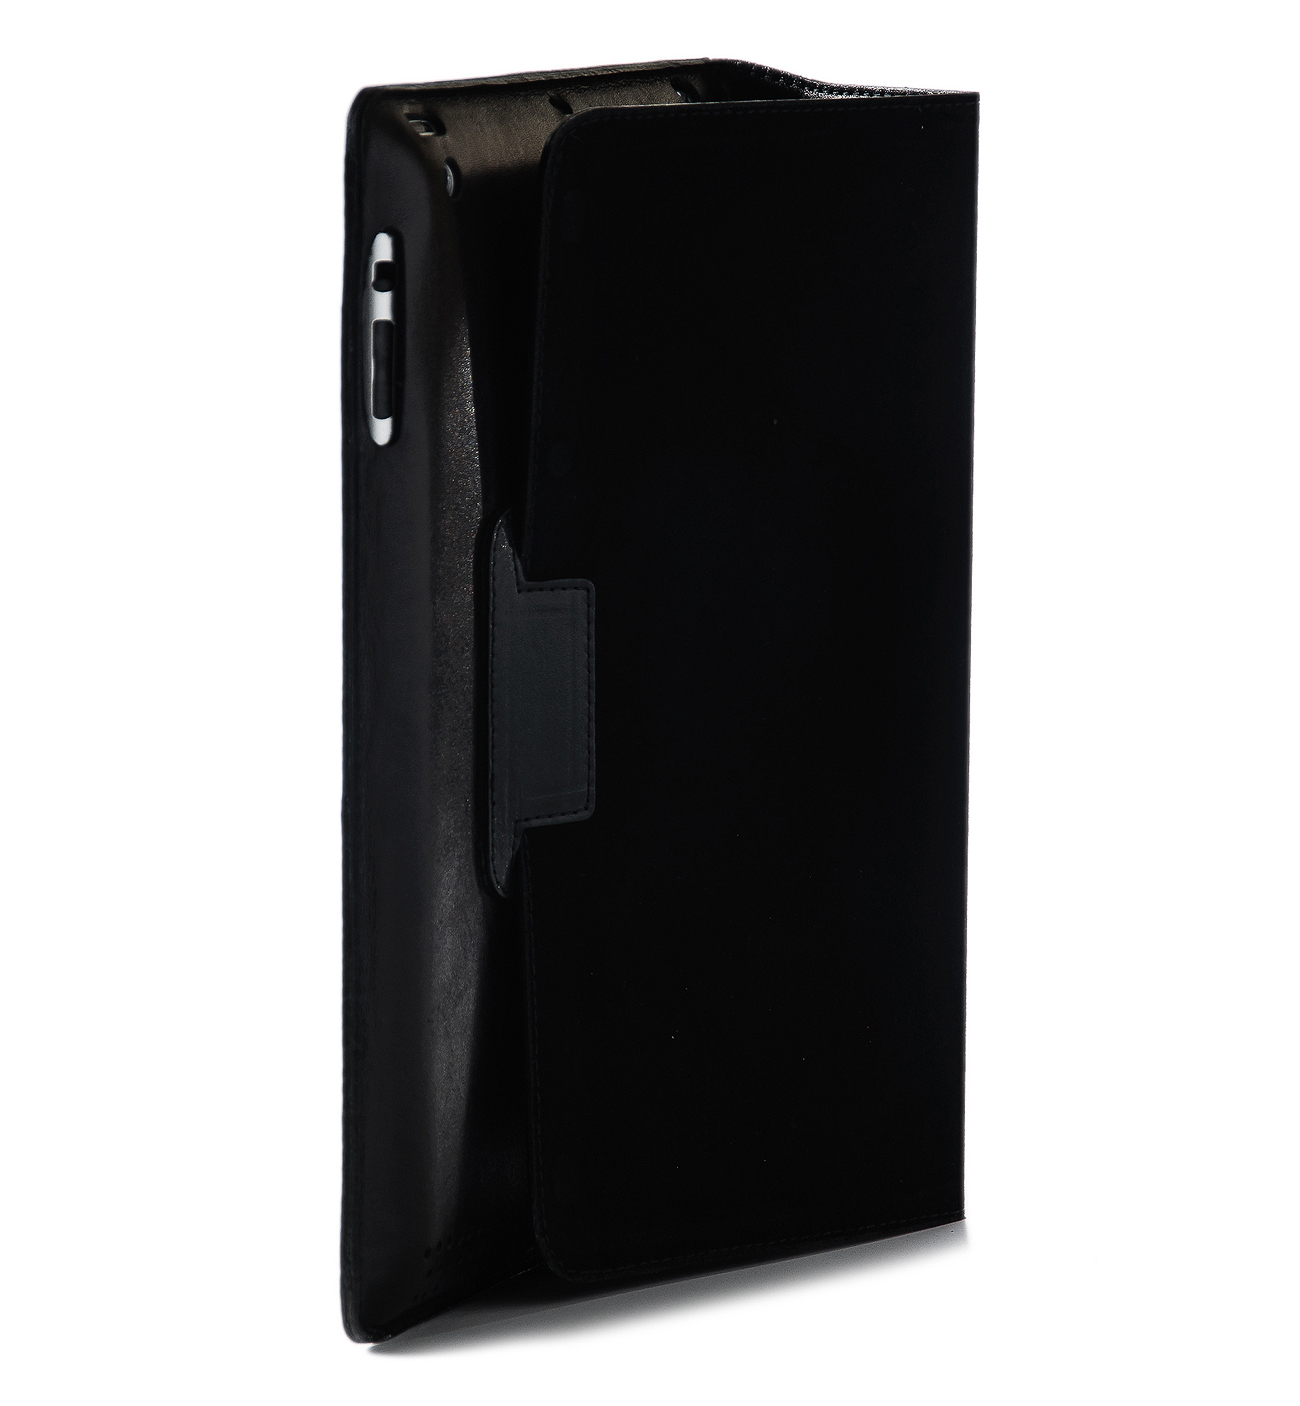 Чехол EGGO Prestige Ultraslim для iPad 2/3/4 (кожа, черный) - гладкая кожа - ITMag